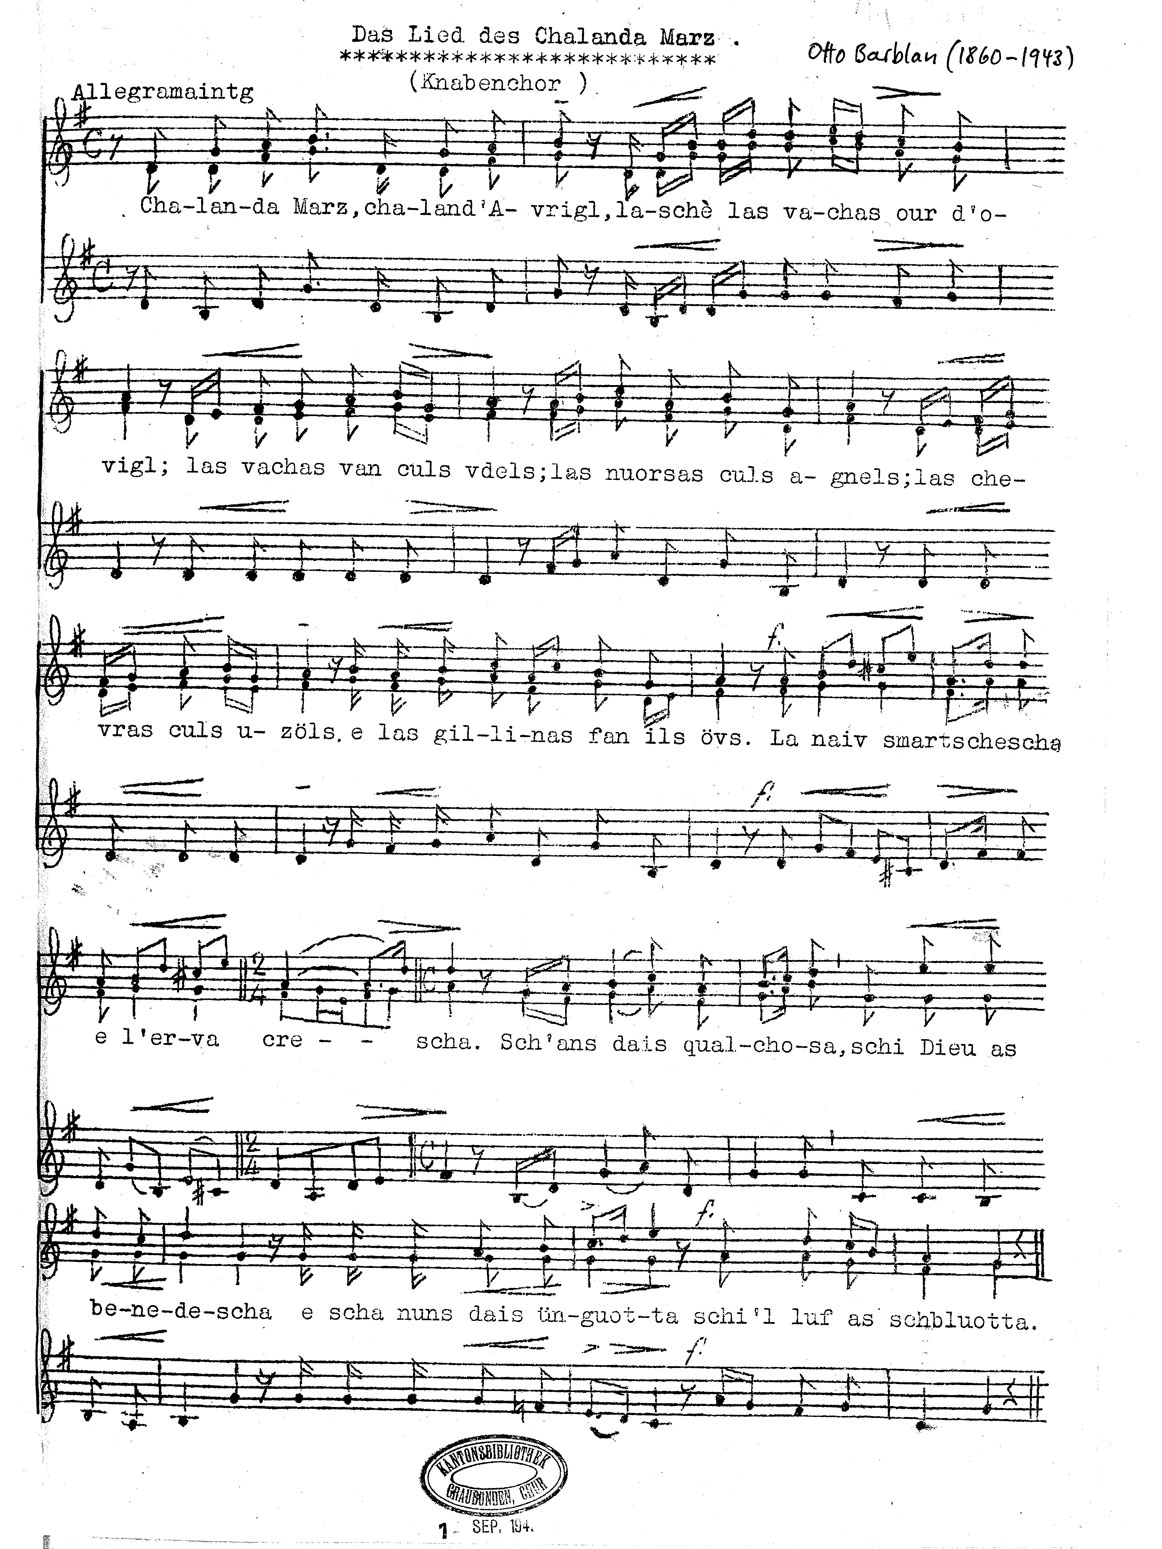 Chalandamarz-Lied von Otto Barblan © Kantonsbibliothek Graubünden